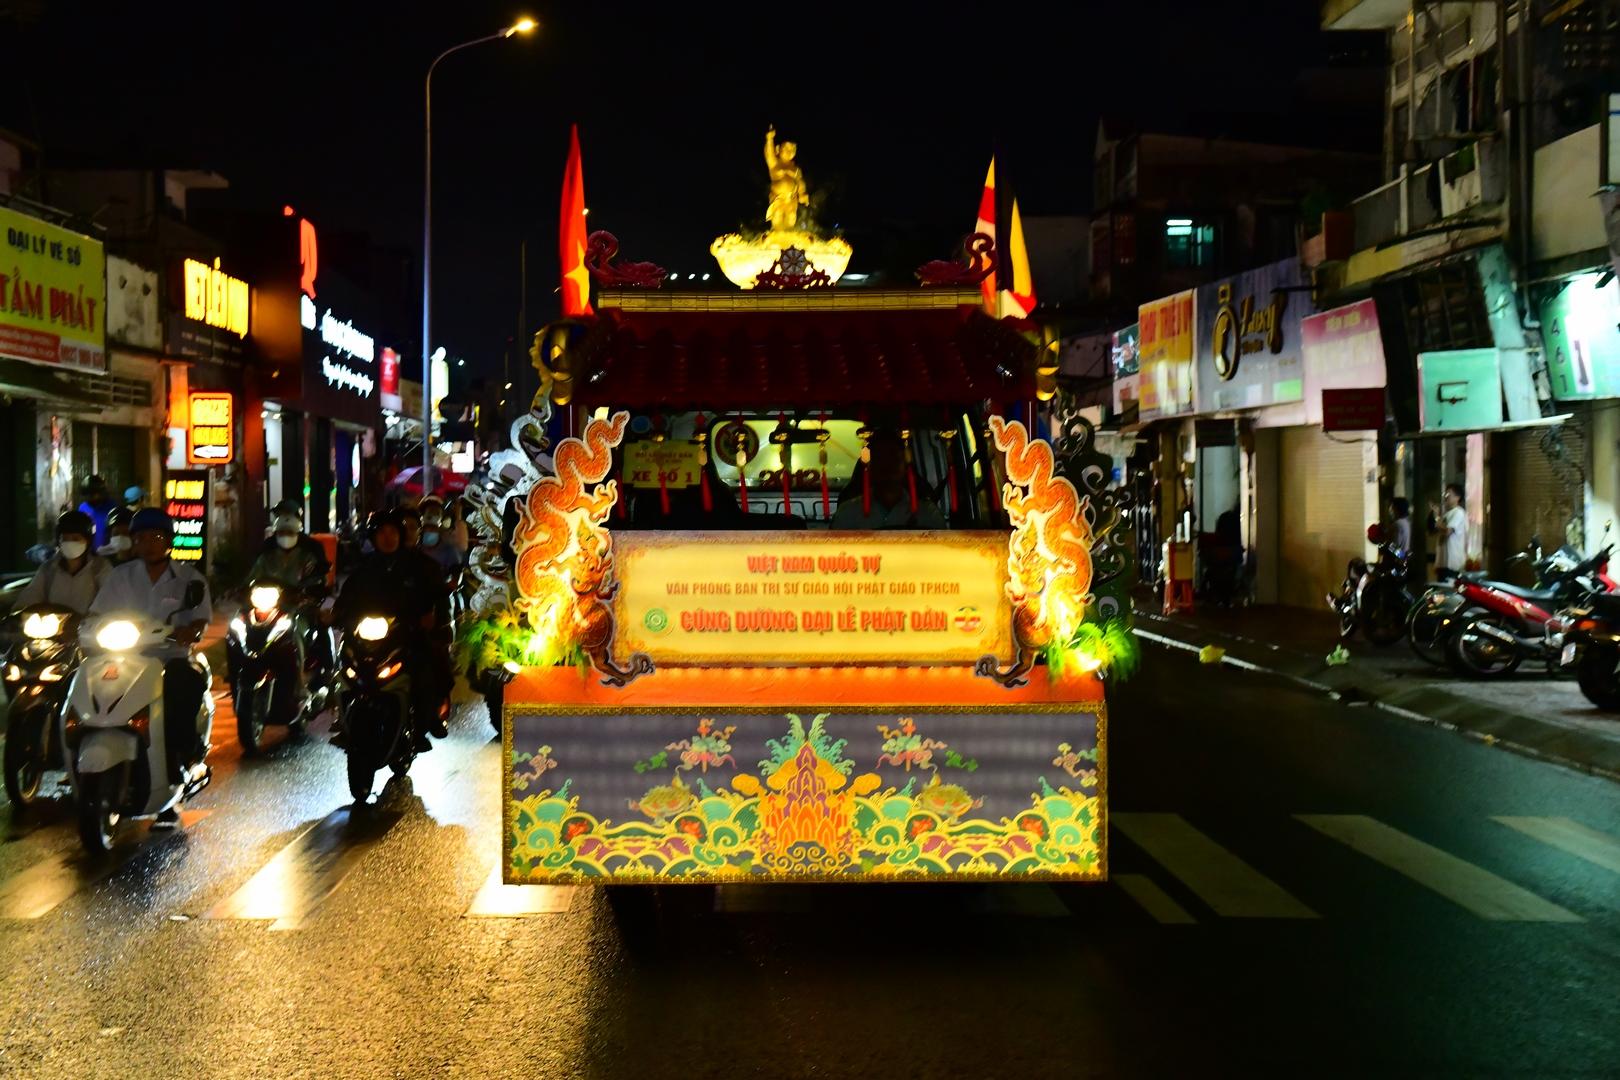 Đoàn xe diễu hành chào mừng Phật đản lần thứ 2647 tại TP.HCM